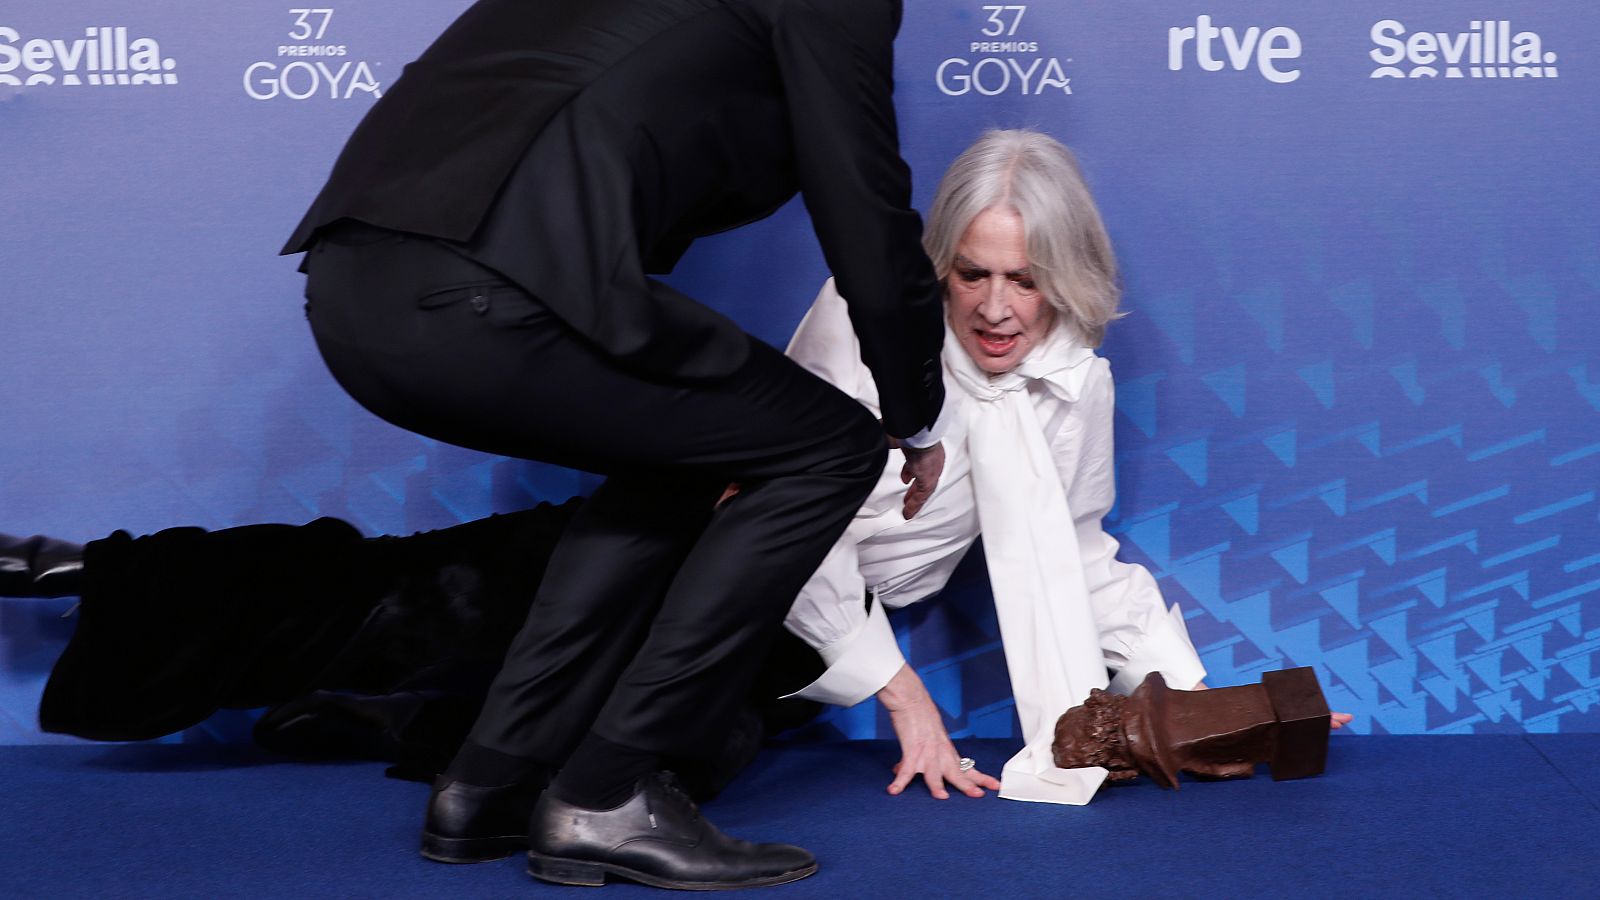 La actriz Susi Sánchez es ayudada a levantarse, tras recoger el Goya a la mejor actriz de reparto por su trabajo en "Cinco lobitos"